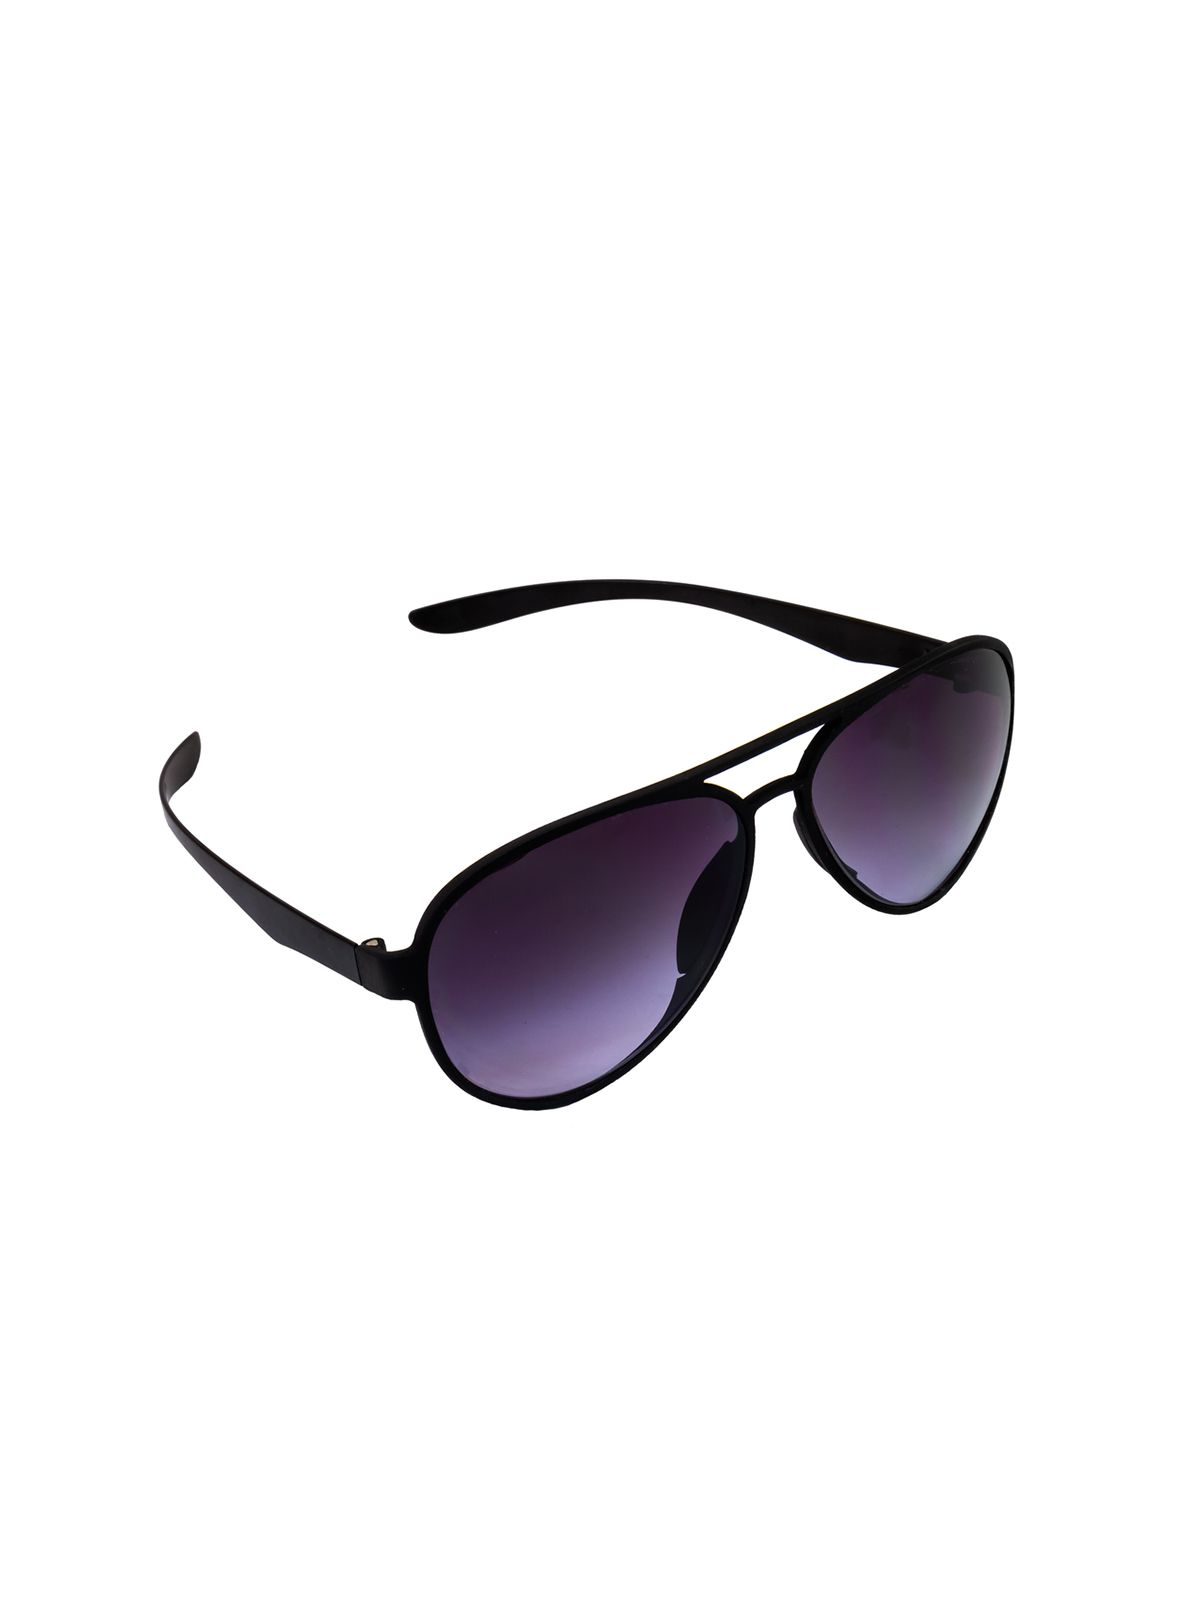 Flying Eyes Sonnenbrille Cooper Aviator - Rahmen matt schwarz, Linsen grau (Verlauf)